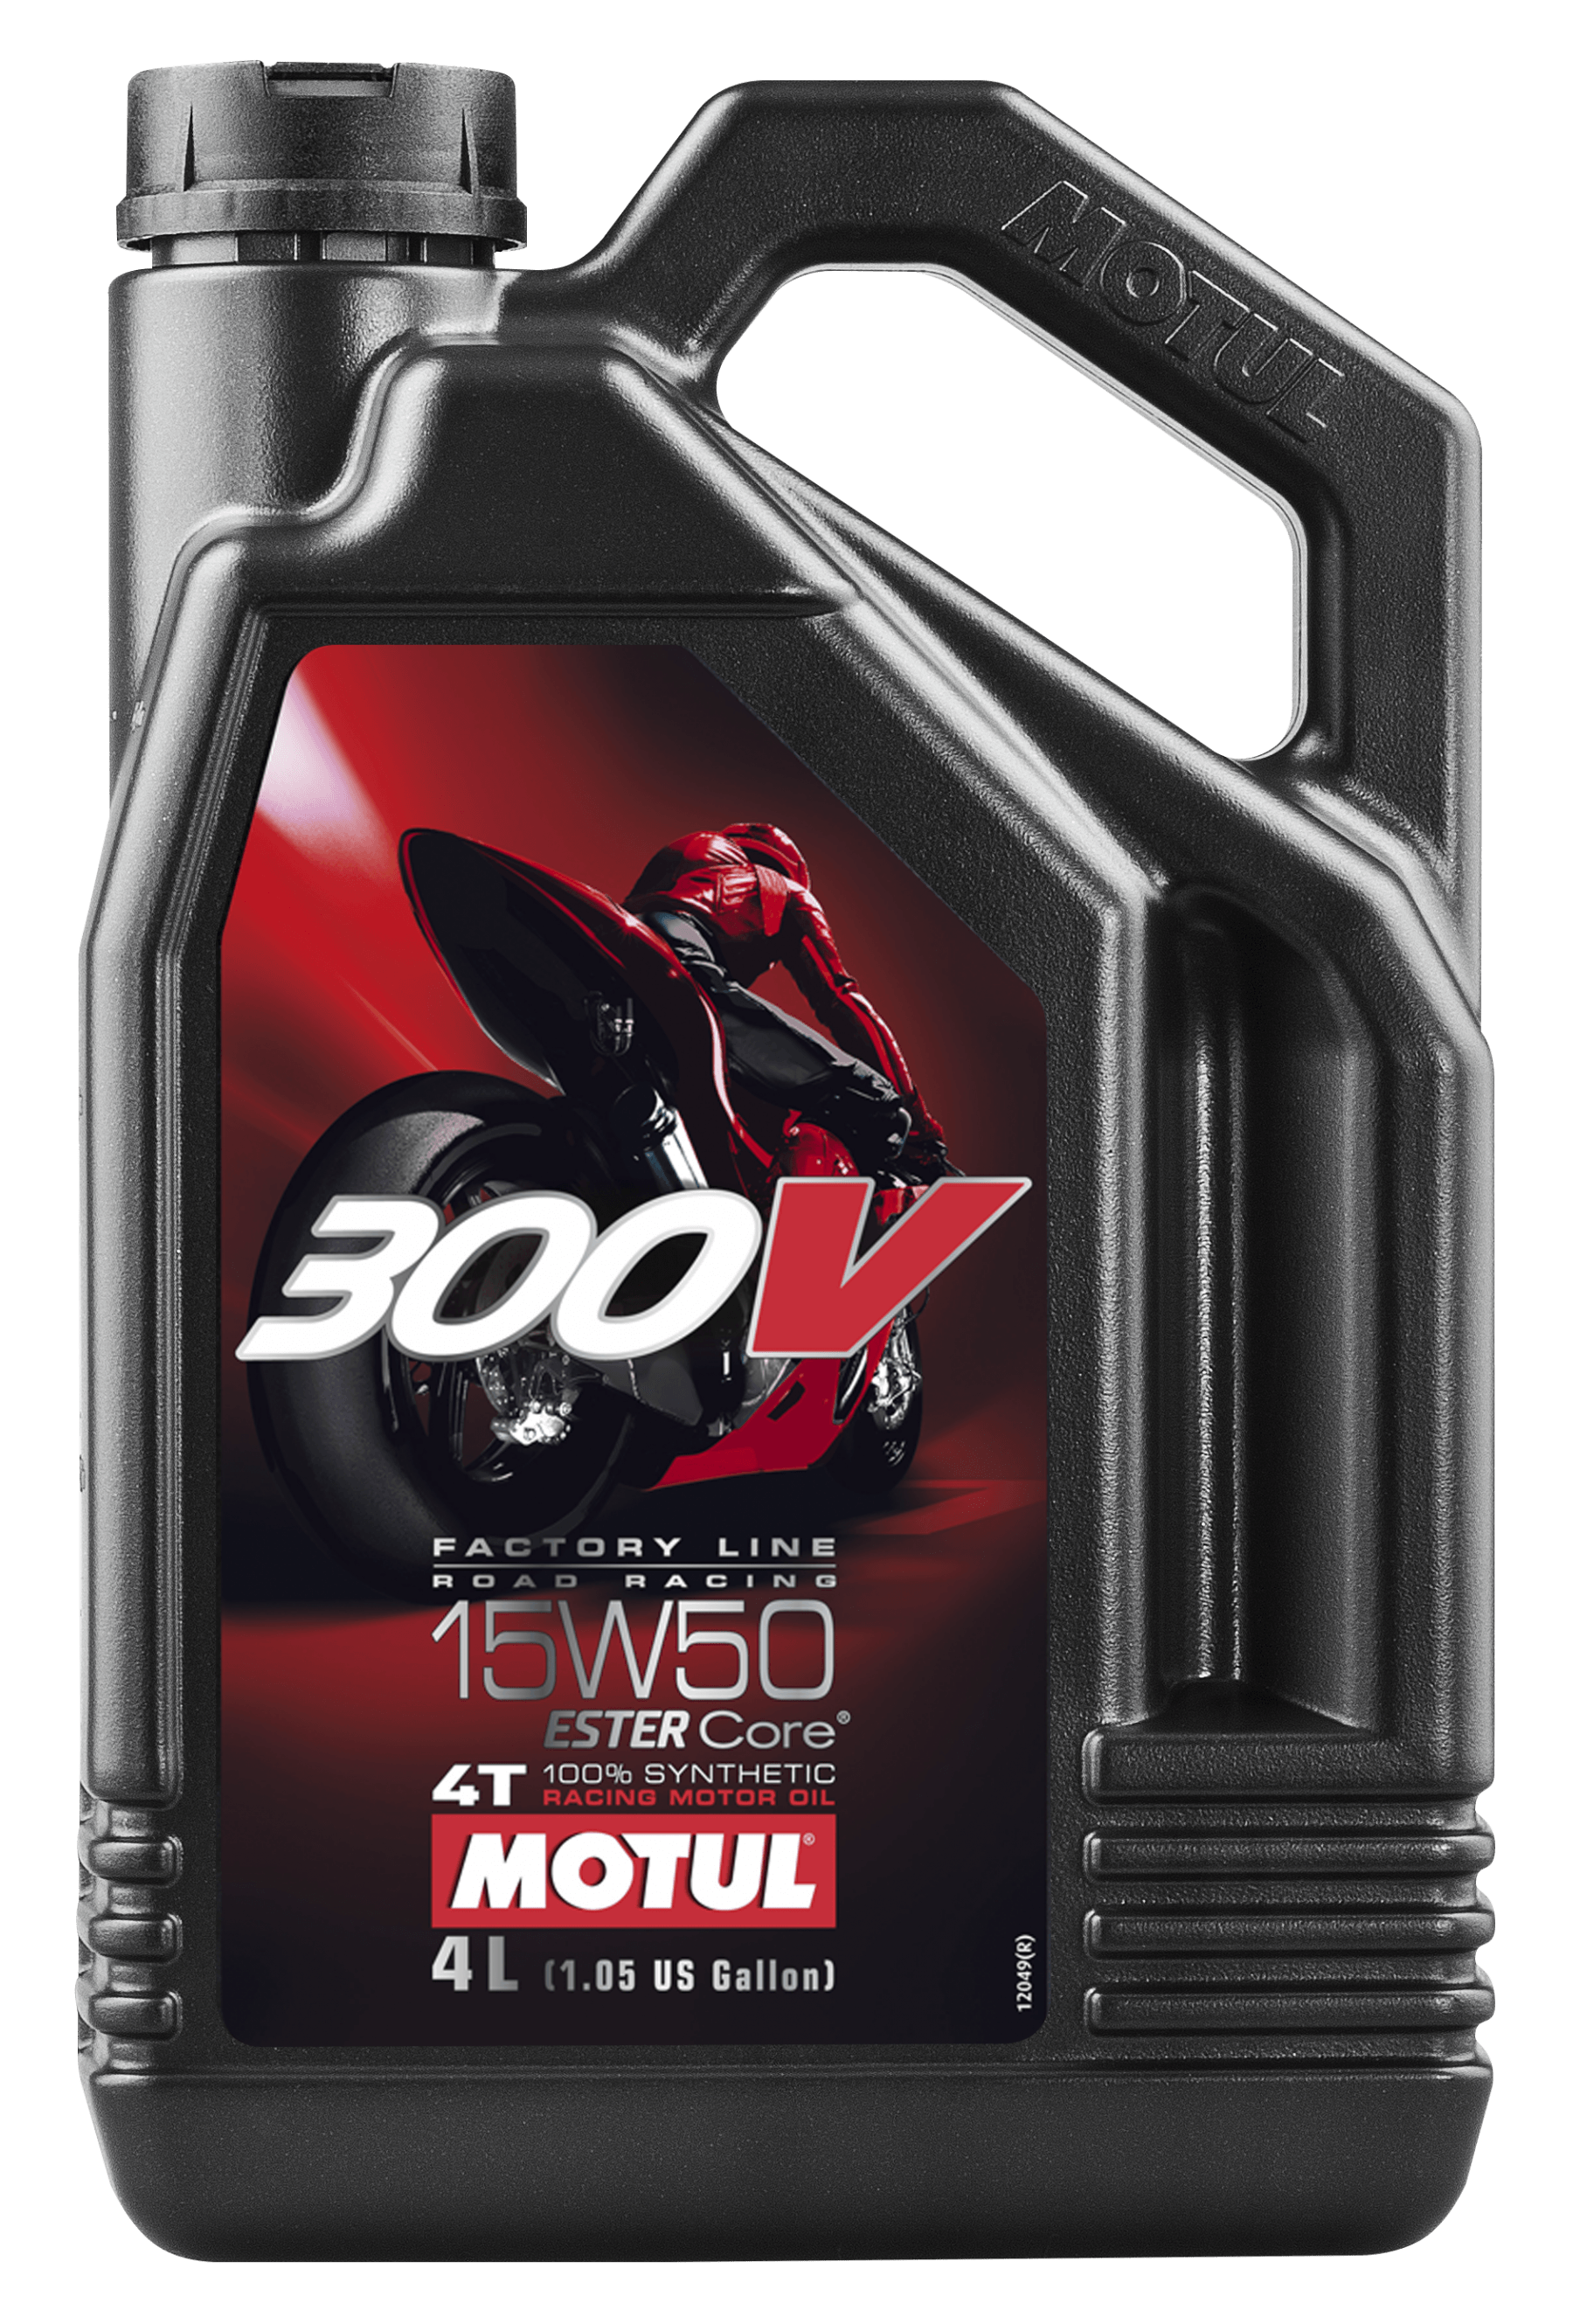 Моторное масло MOTUL 300V 4T FACTORY LINE ROAD RACING 15W-50, 4 литра 15W50 (836241 / 104129)